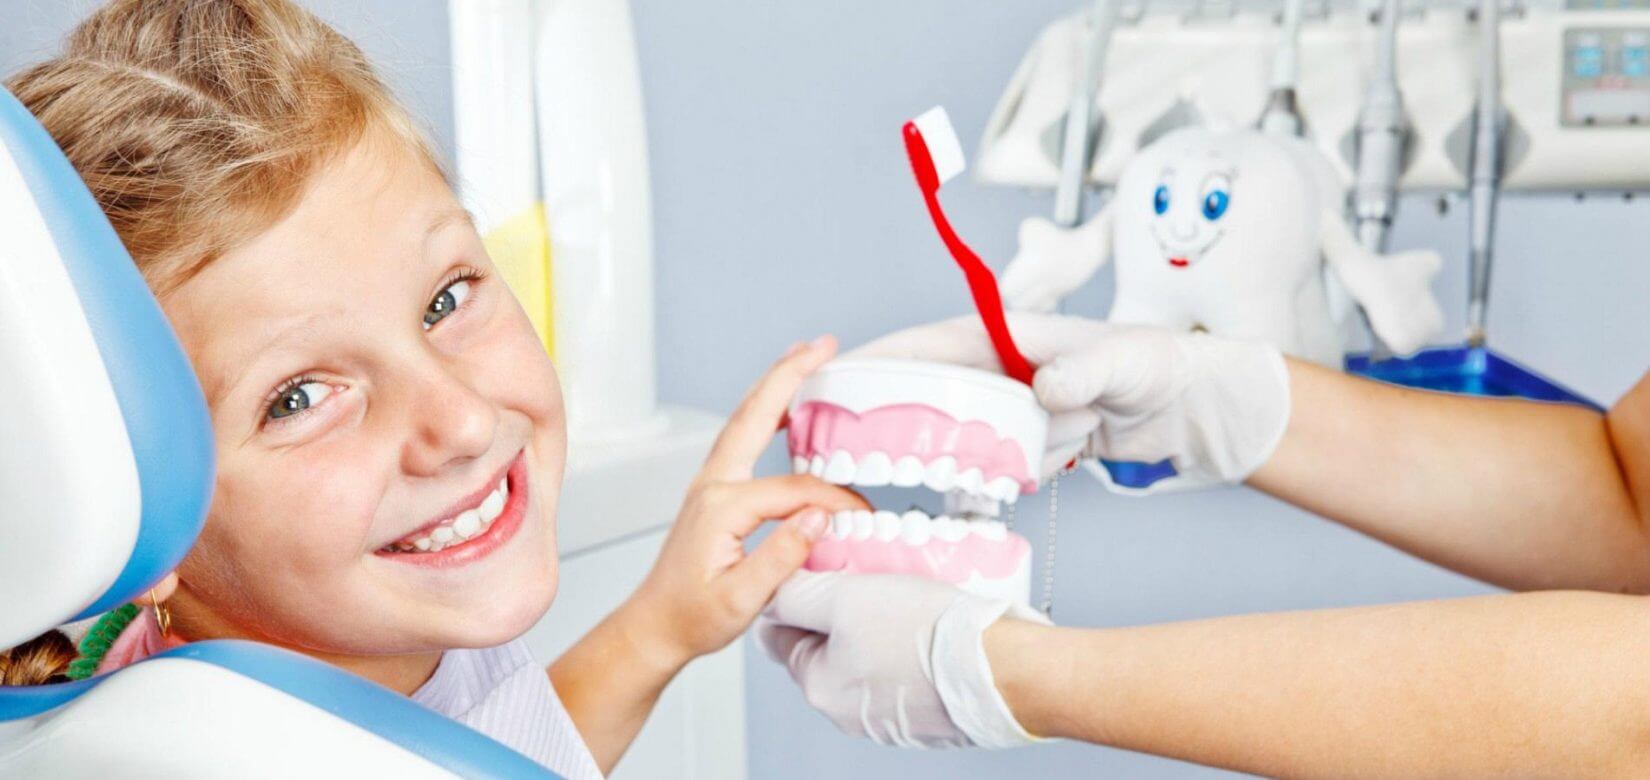 Δωρεάν οδοντιατρική φροντίδα μέσω voucher για 900.000 παιδιά από τον Απρίλιο